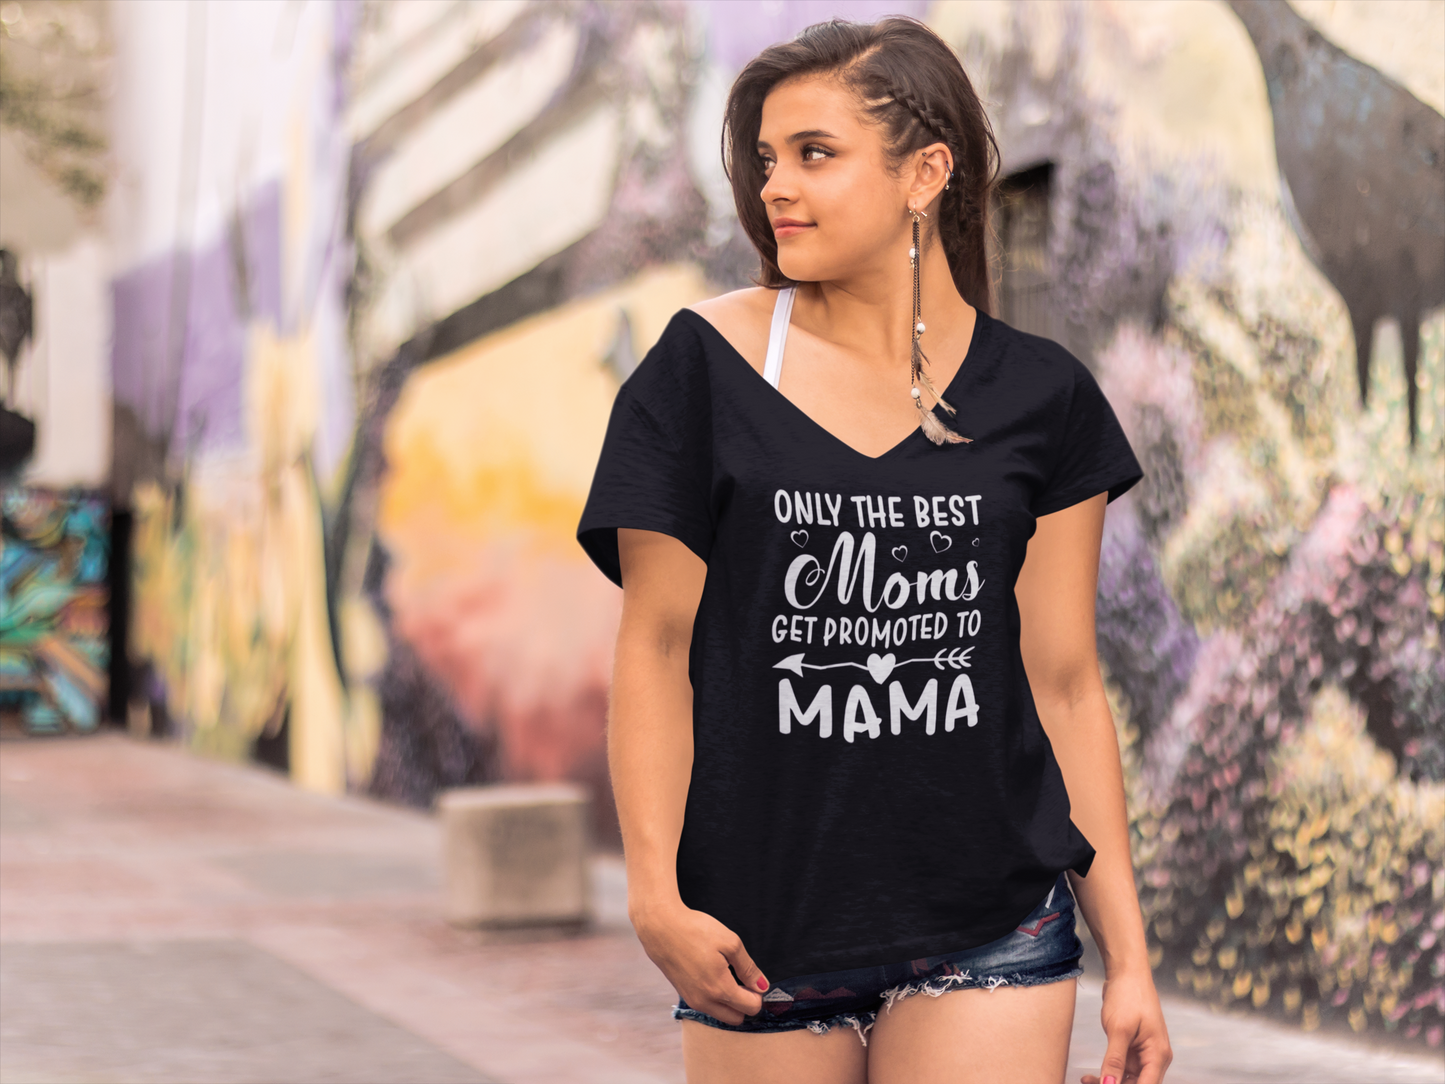 ULTRABASIC <span>Damen-</span> T-Shirt „Nur die besten Mütter werden zur Mama befördert“ – Mutter-Kurzarm-T-Shirt